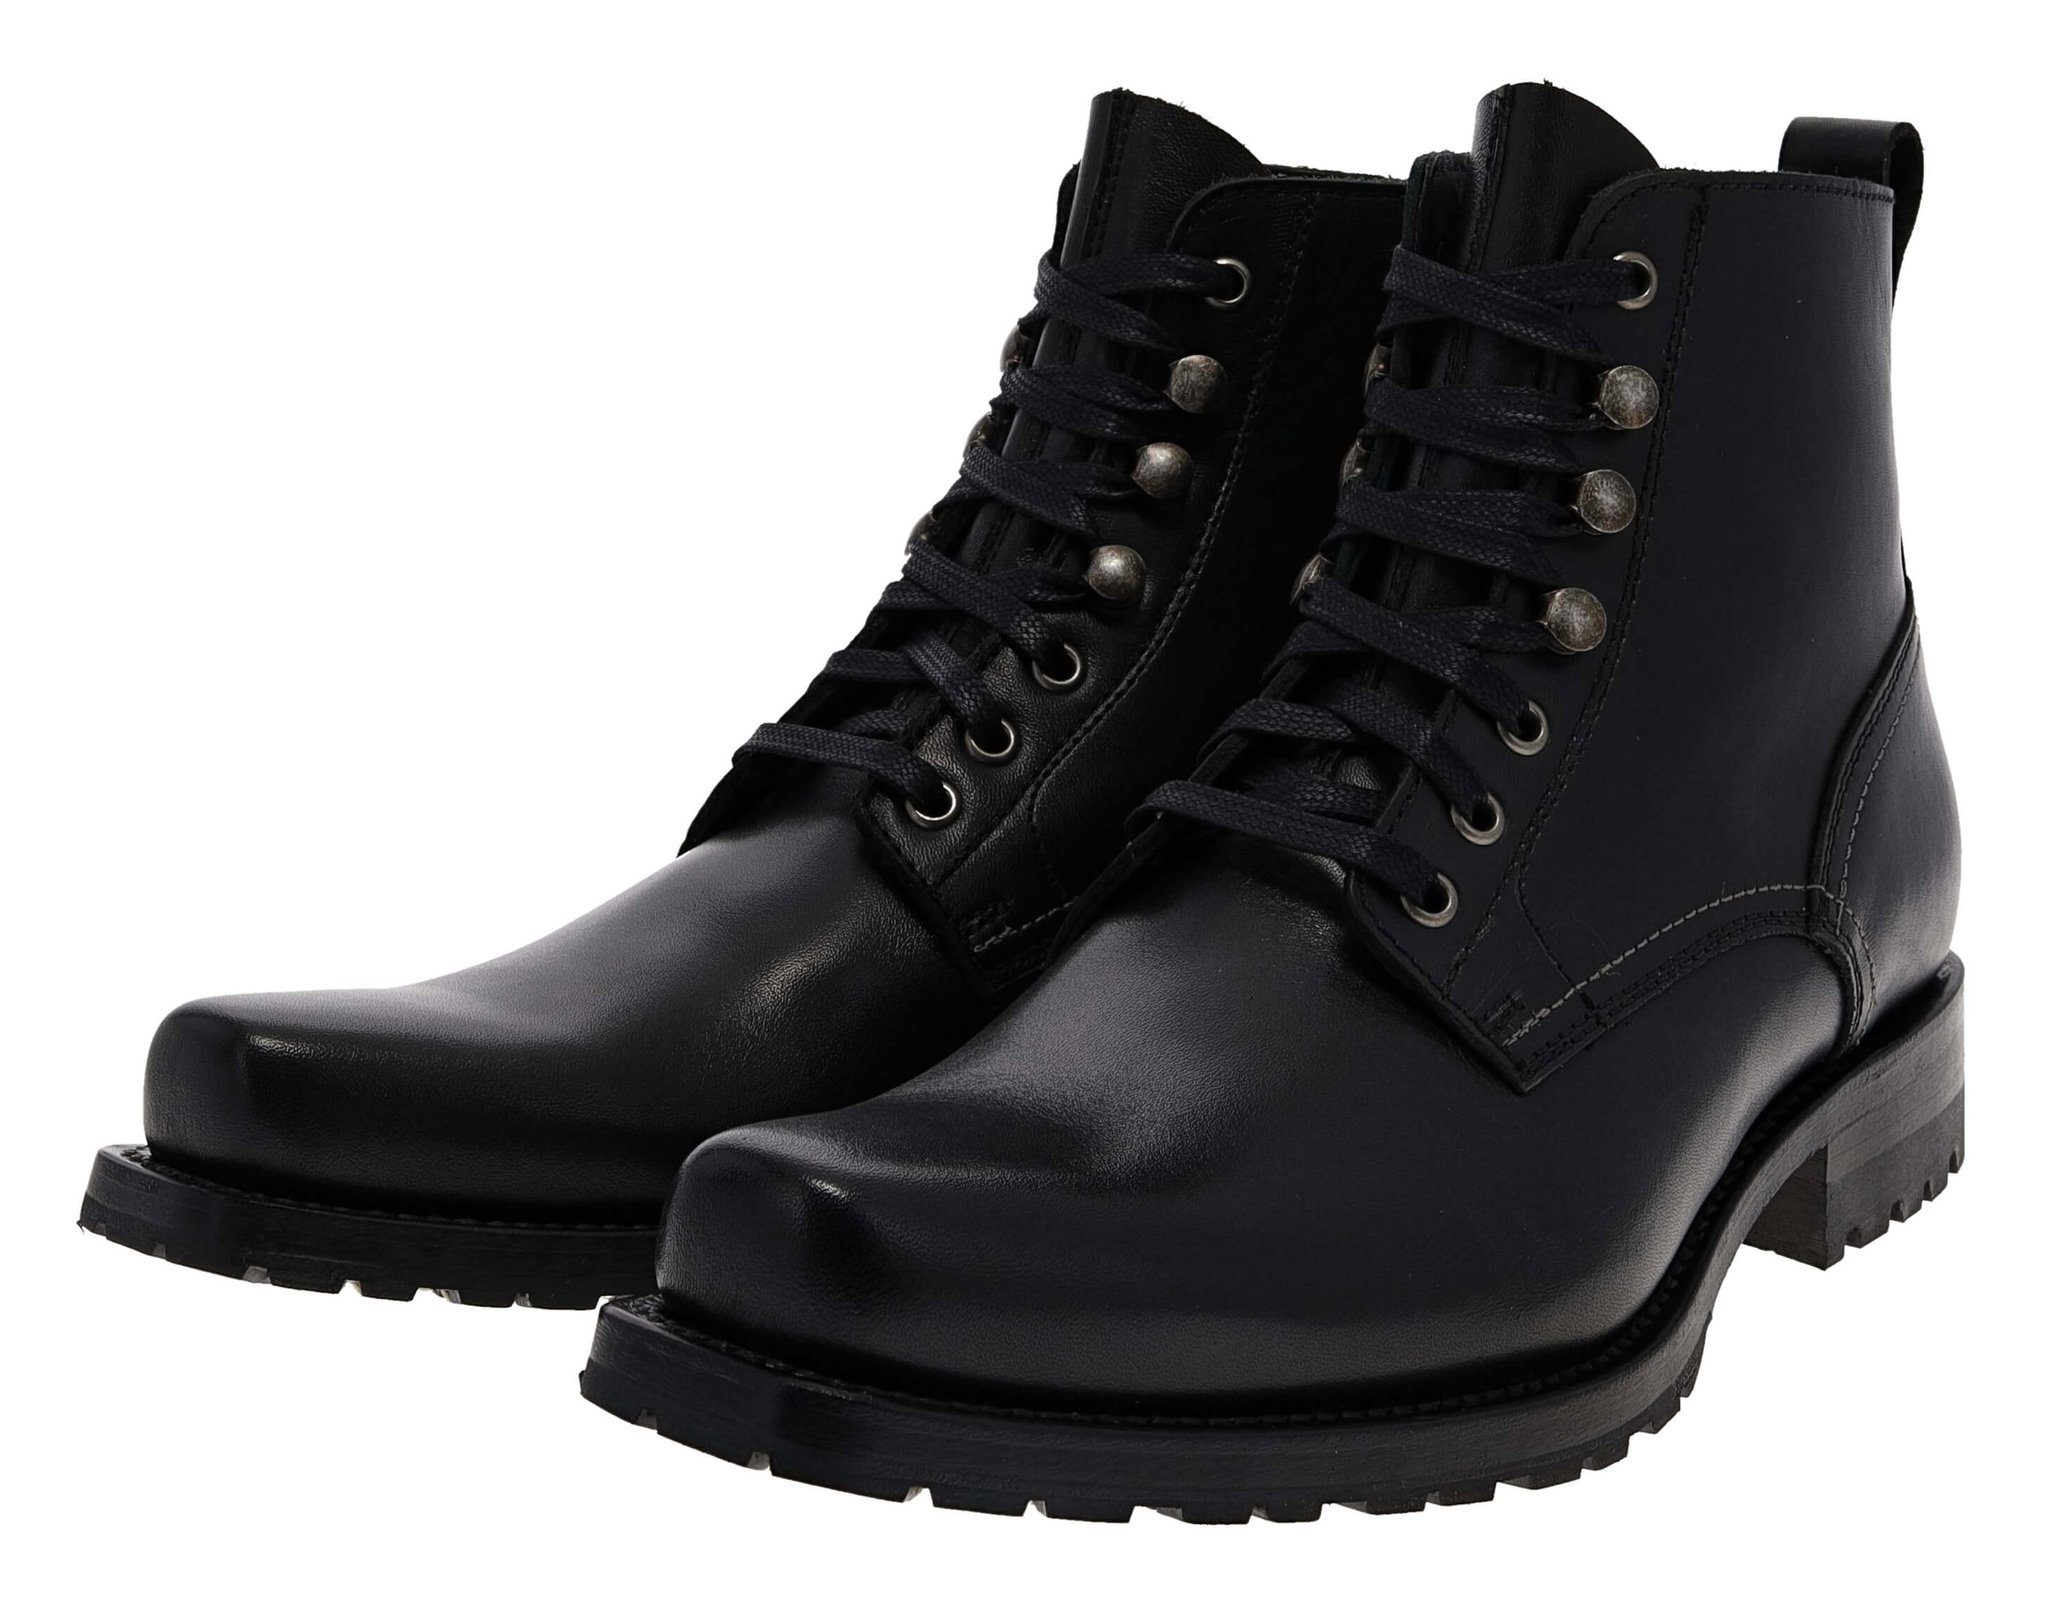 FB Fashion Boots EAGLE II Schwarz Stiefelette Rahmengenähter Herren  Schnürstiefel, Bequeme Passform, Lederlaufsohle mit Gummischutzbesohlung, 3  cm hoher Absatz